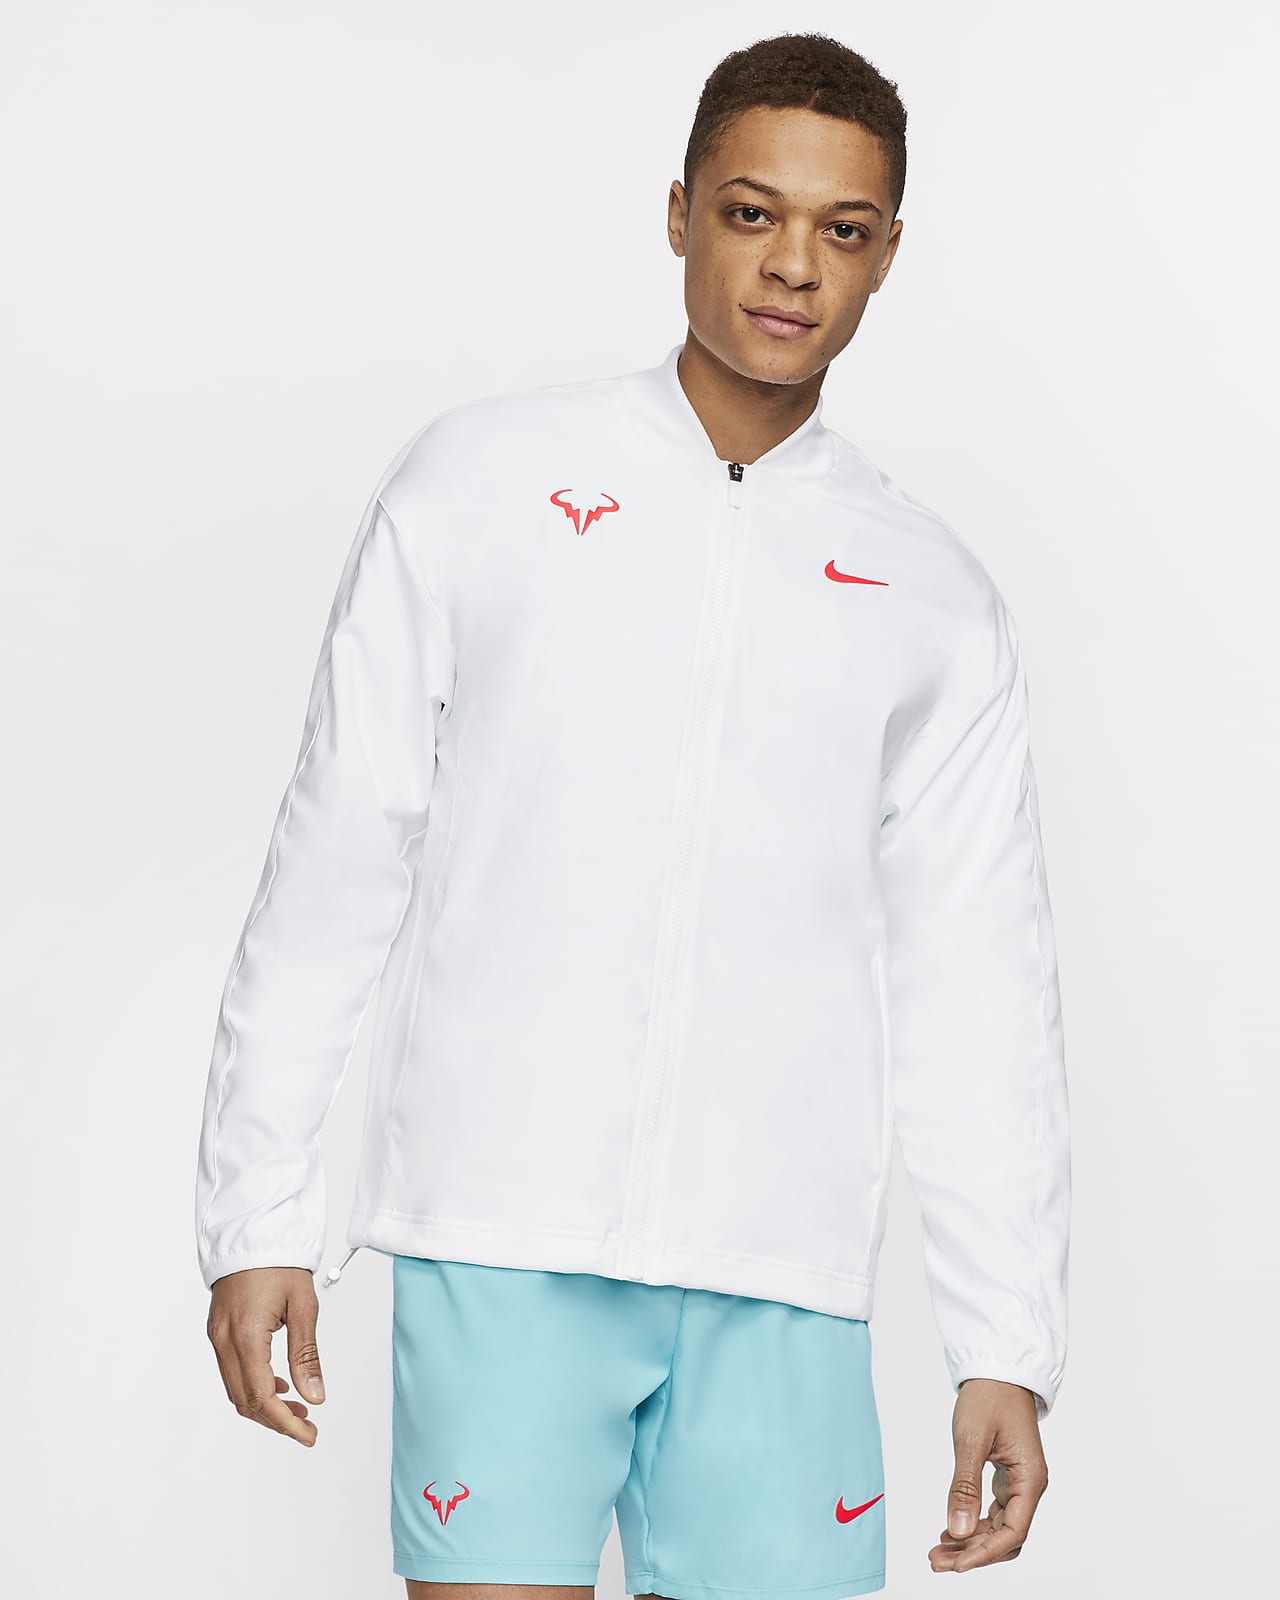 Rafa Men's Tennis Jacket. Nike LU